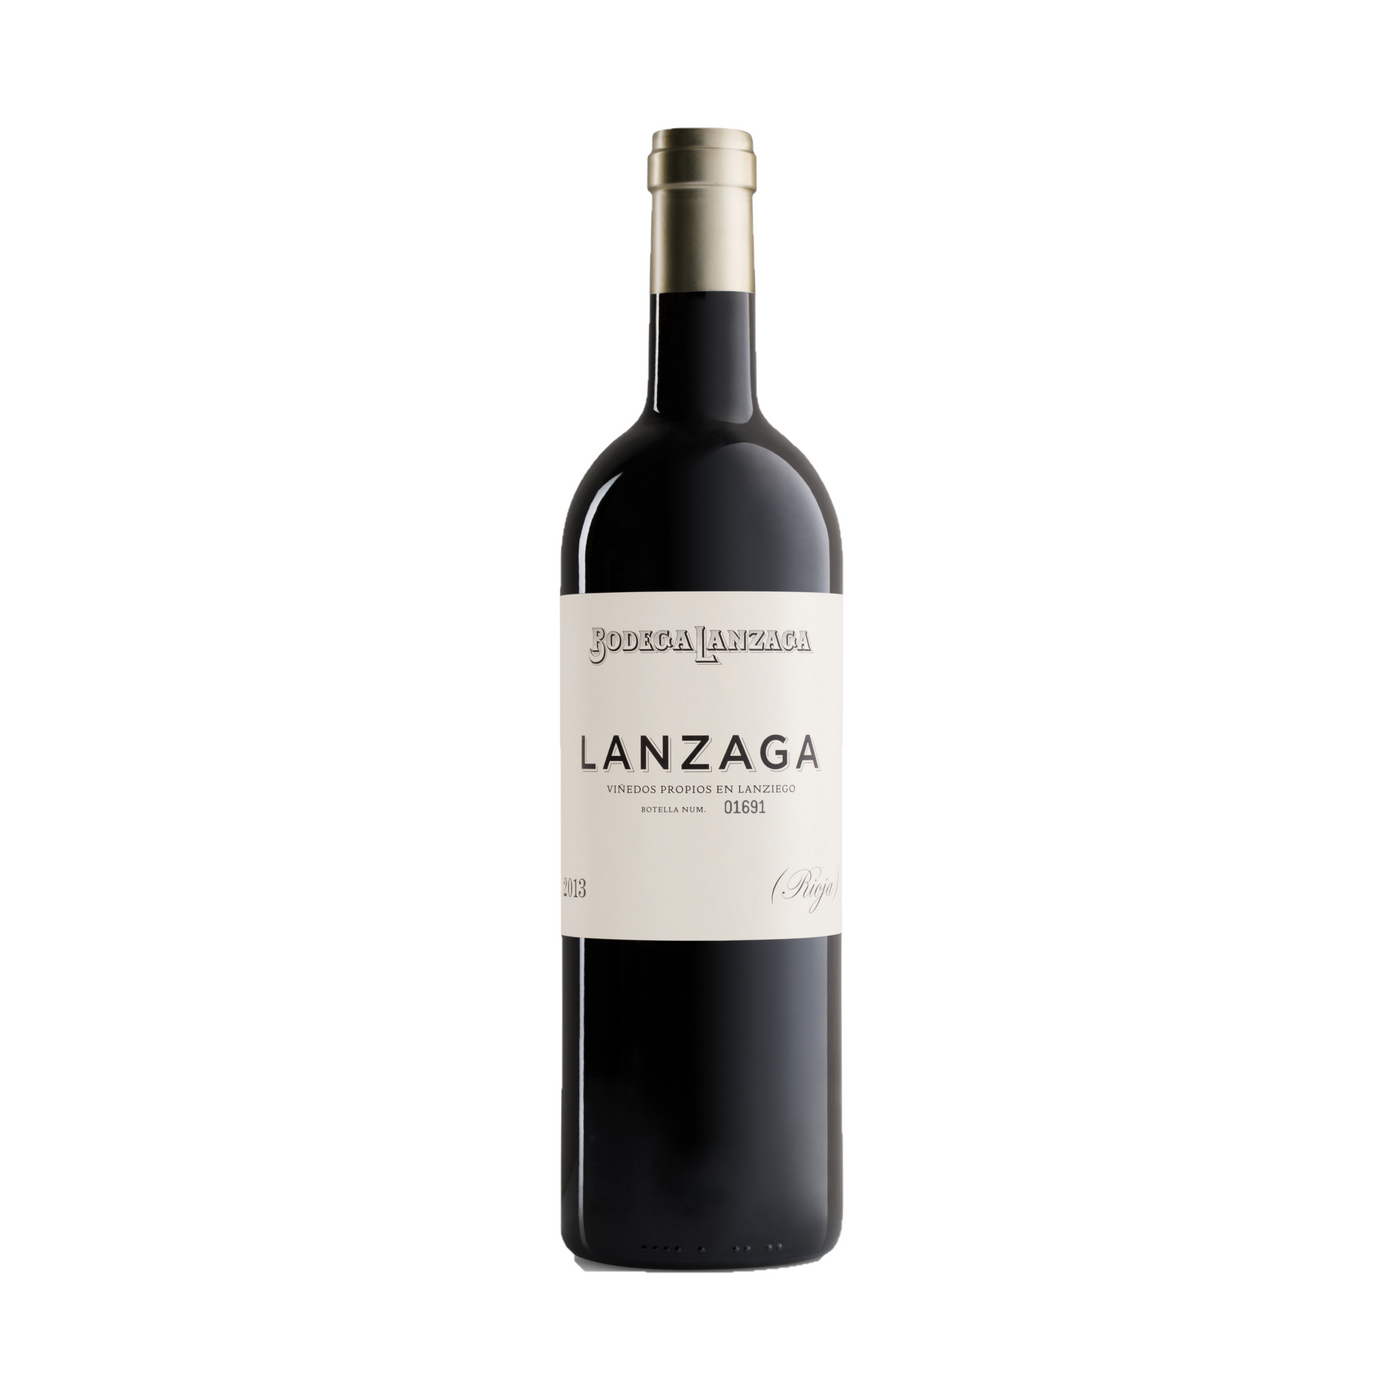 Bodega Lanzaga Lanzaga Rioja 2014